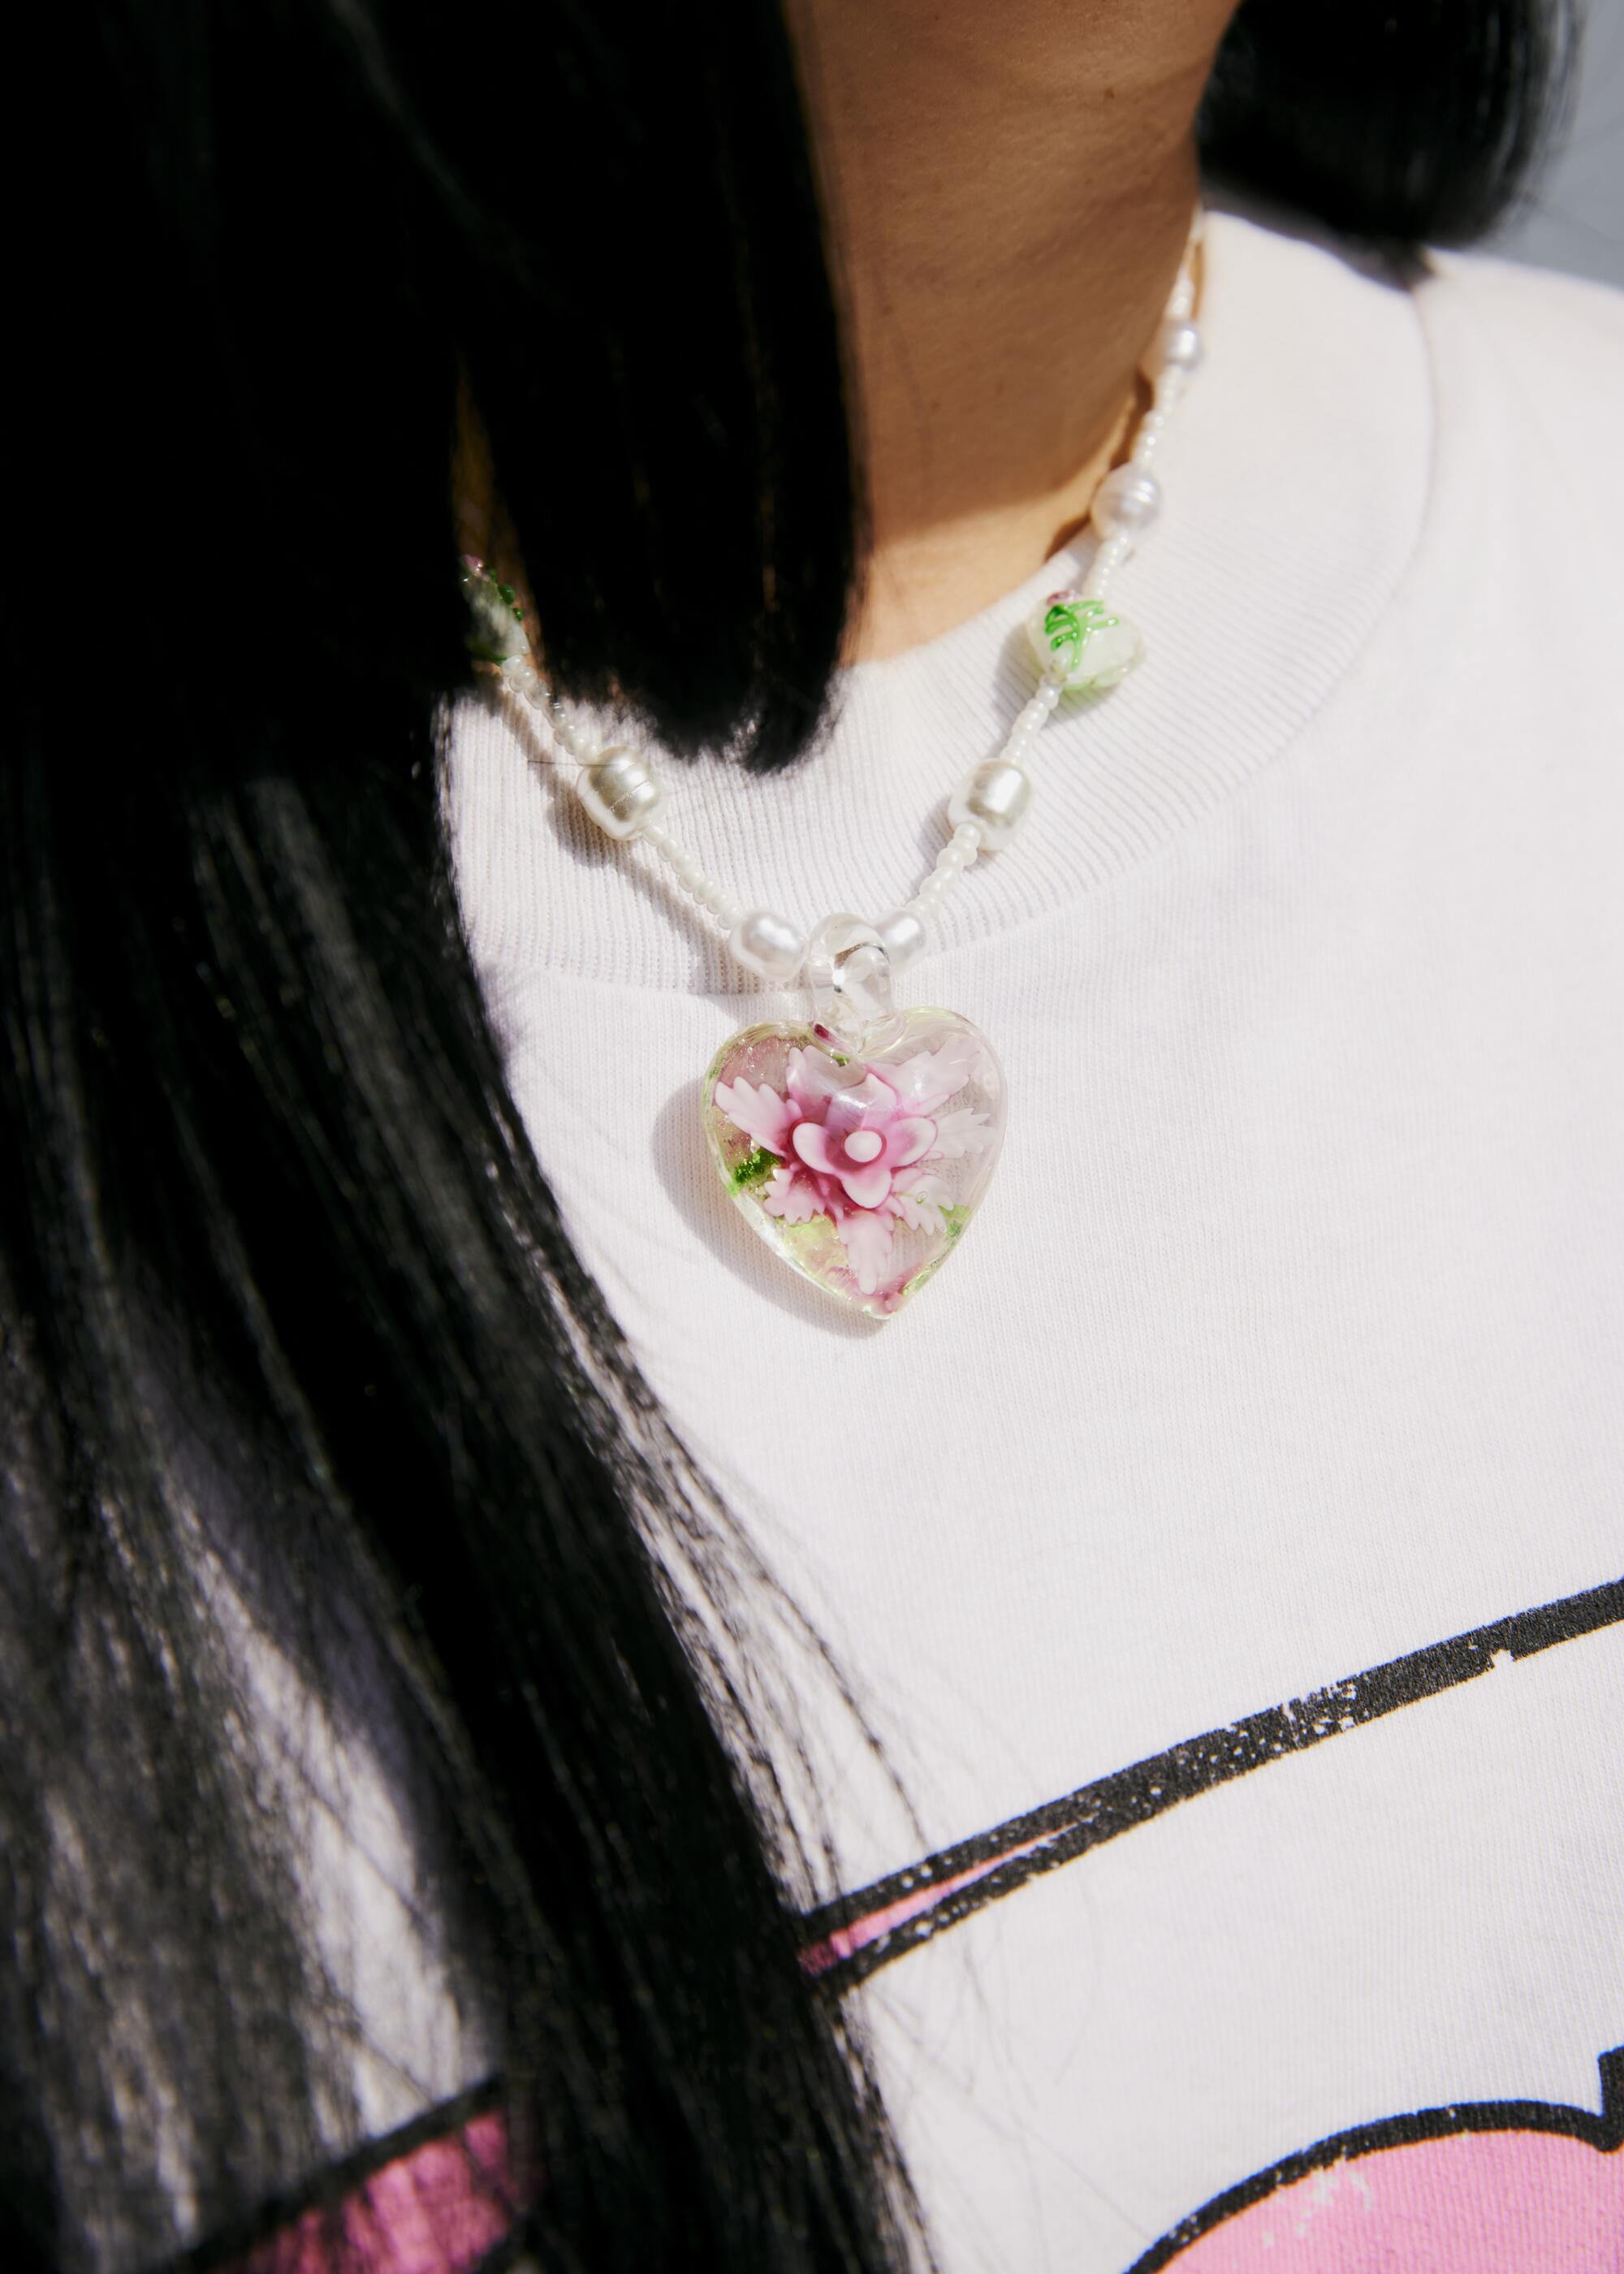 Détail d'un collier en forme de coeur sur un pull blanc.